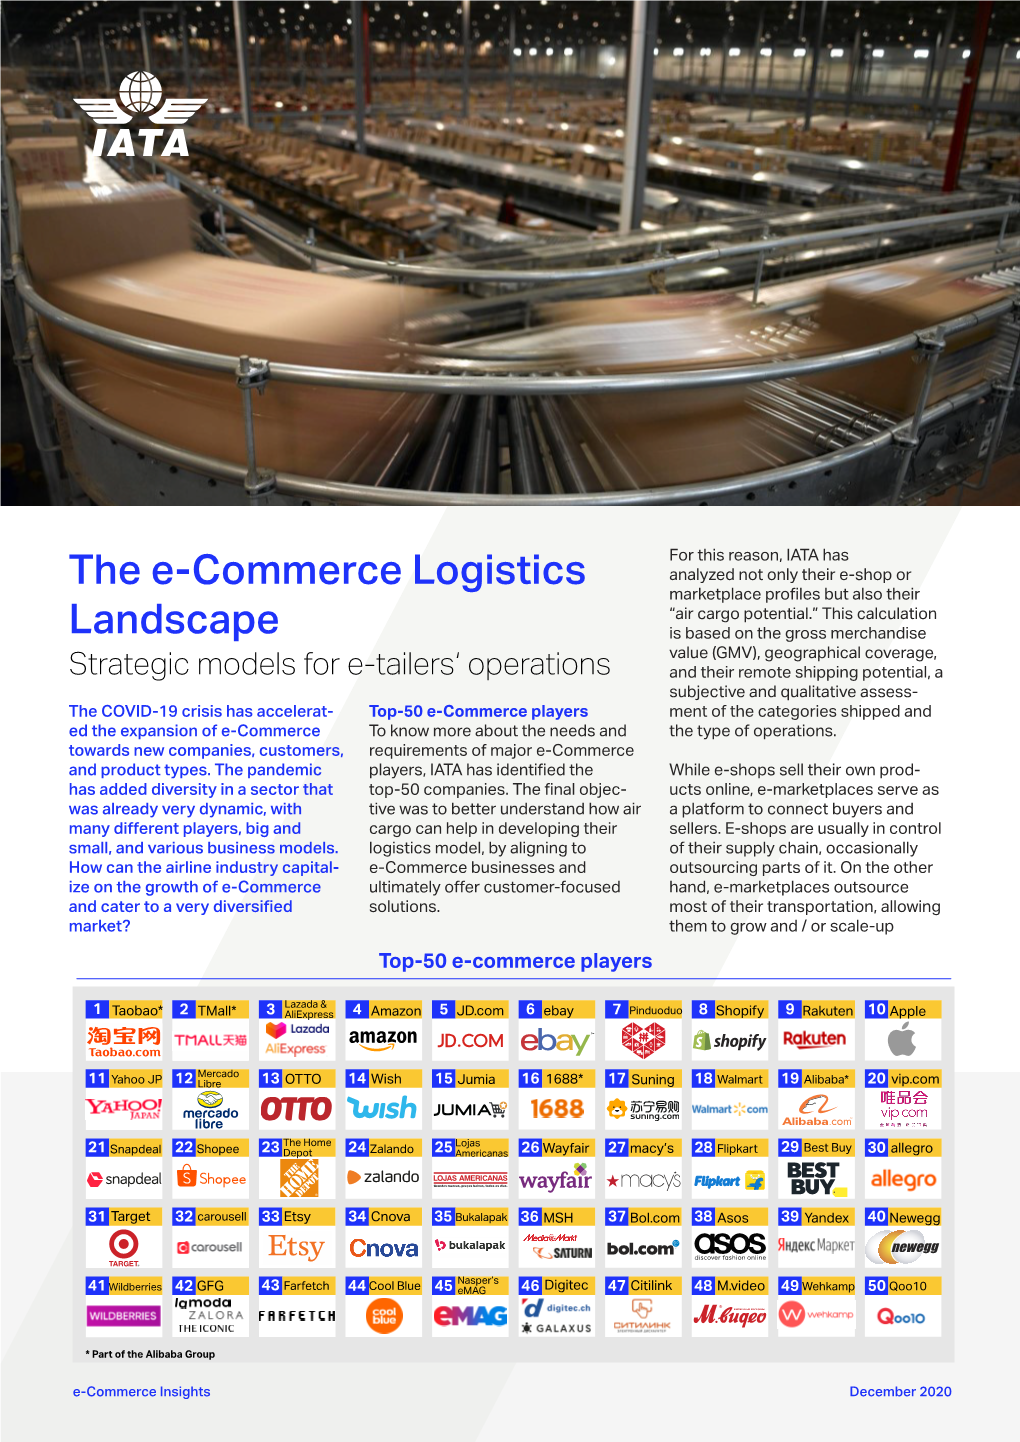 The E-Commerce Logistics Landscape